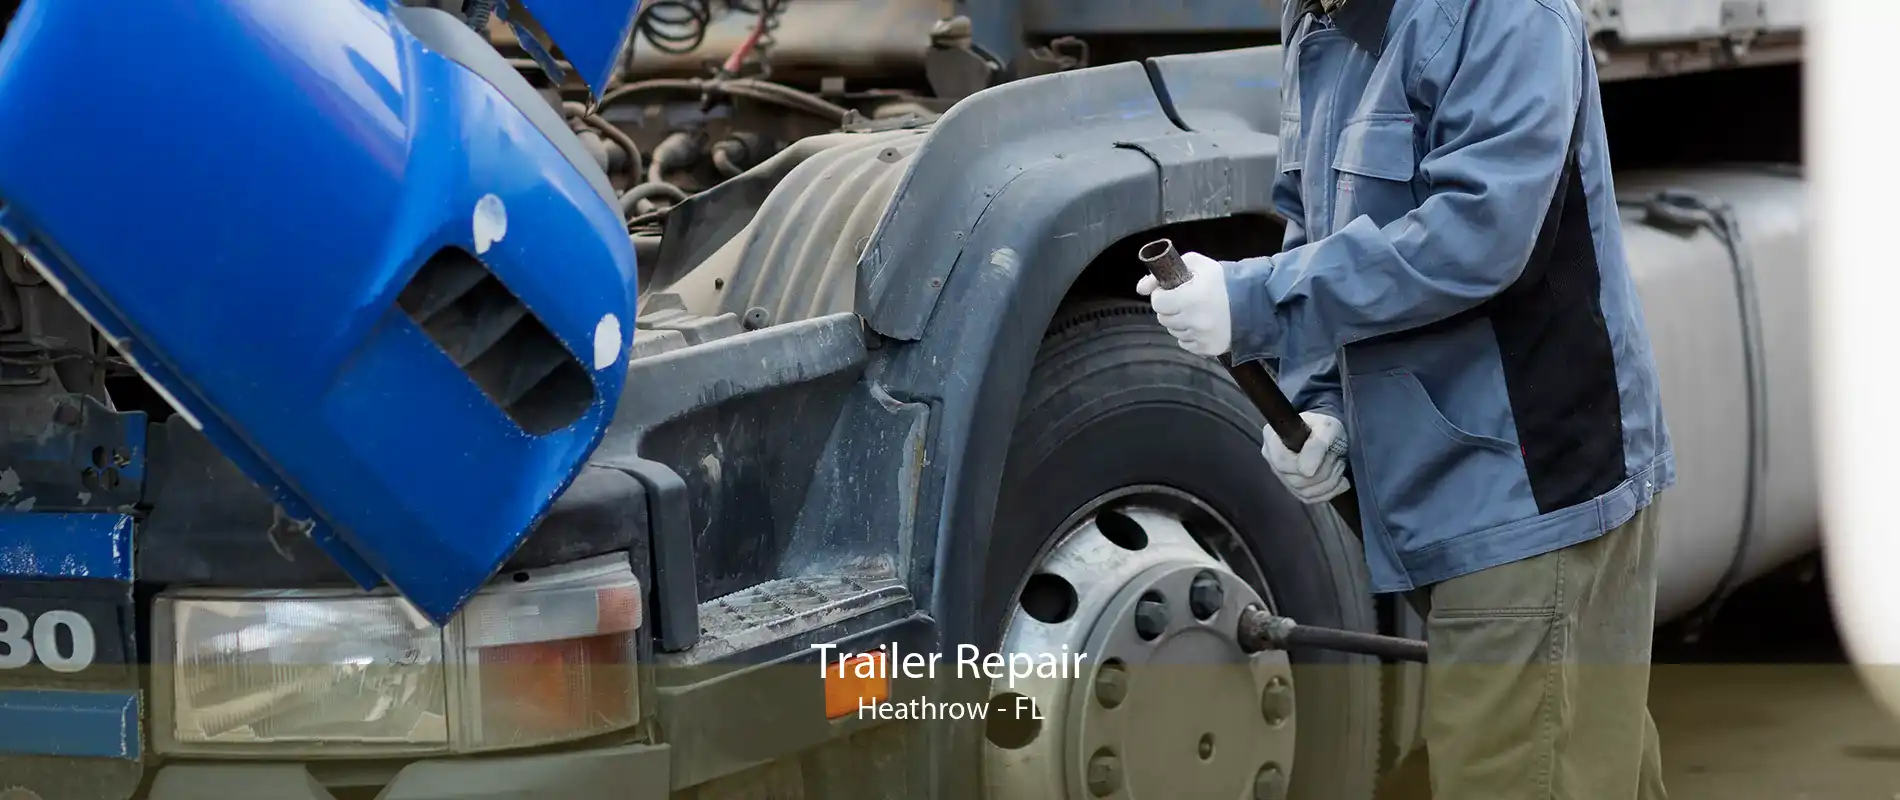 Trailer Repair Heathrow - FL